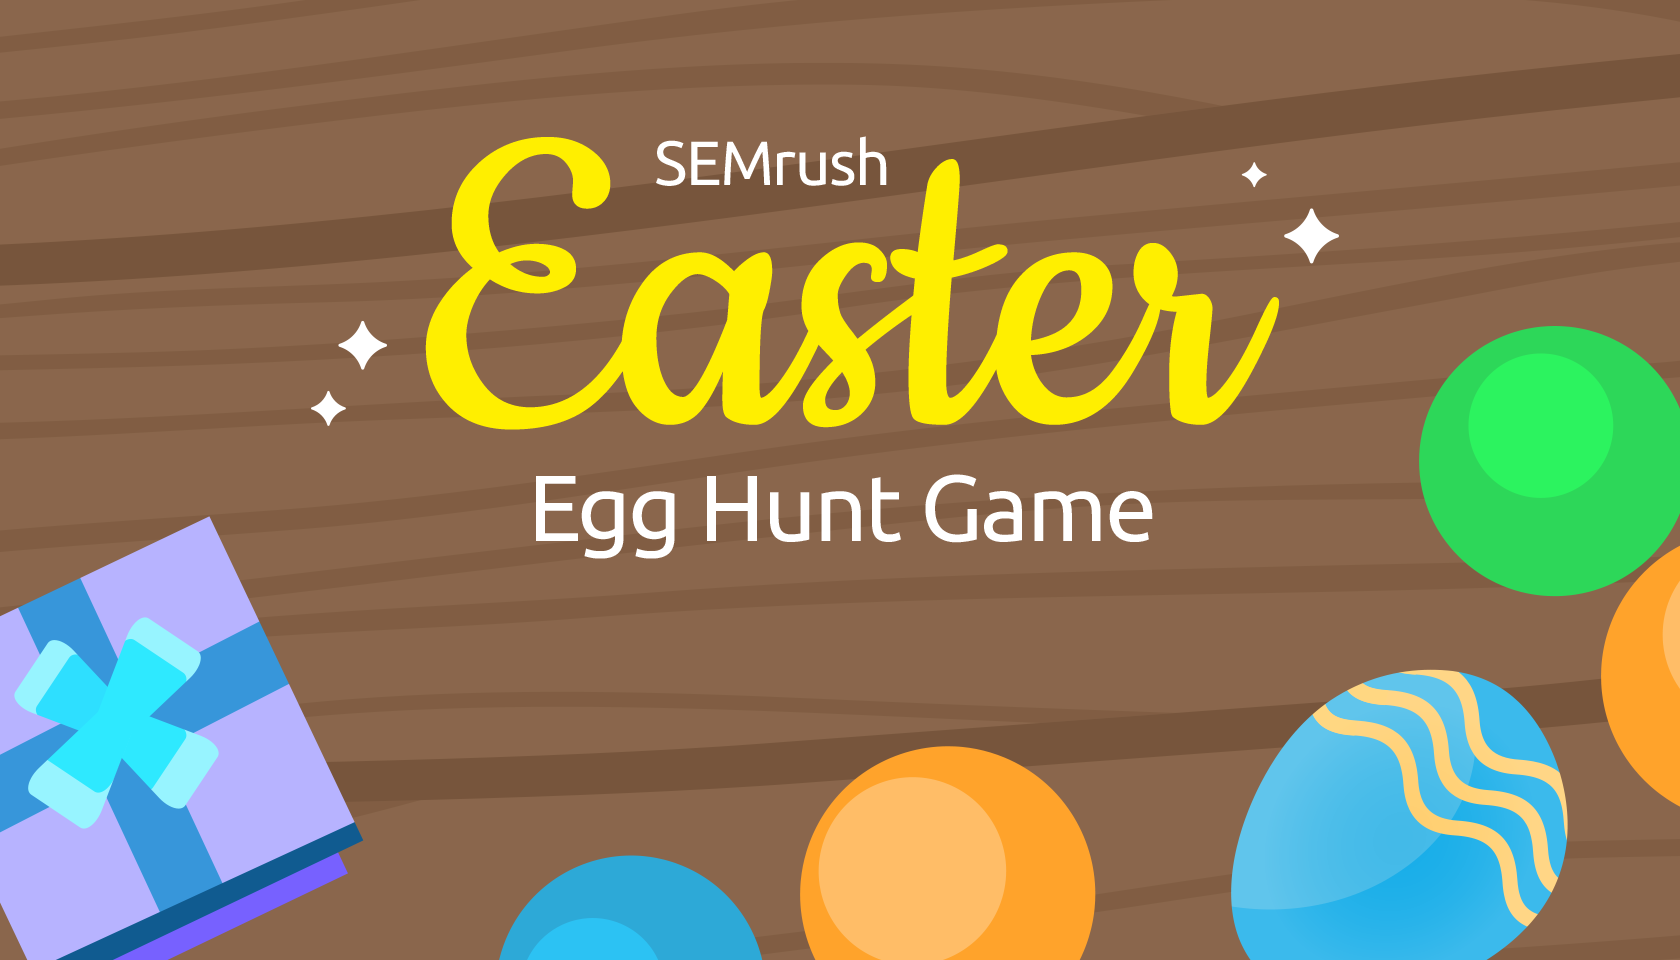 Semrush Easter Egg Hunt All The Secrets Revealed